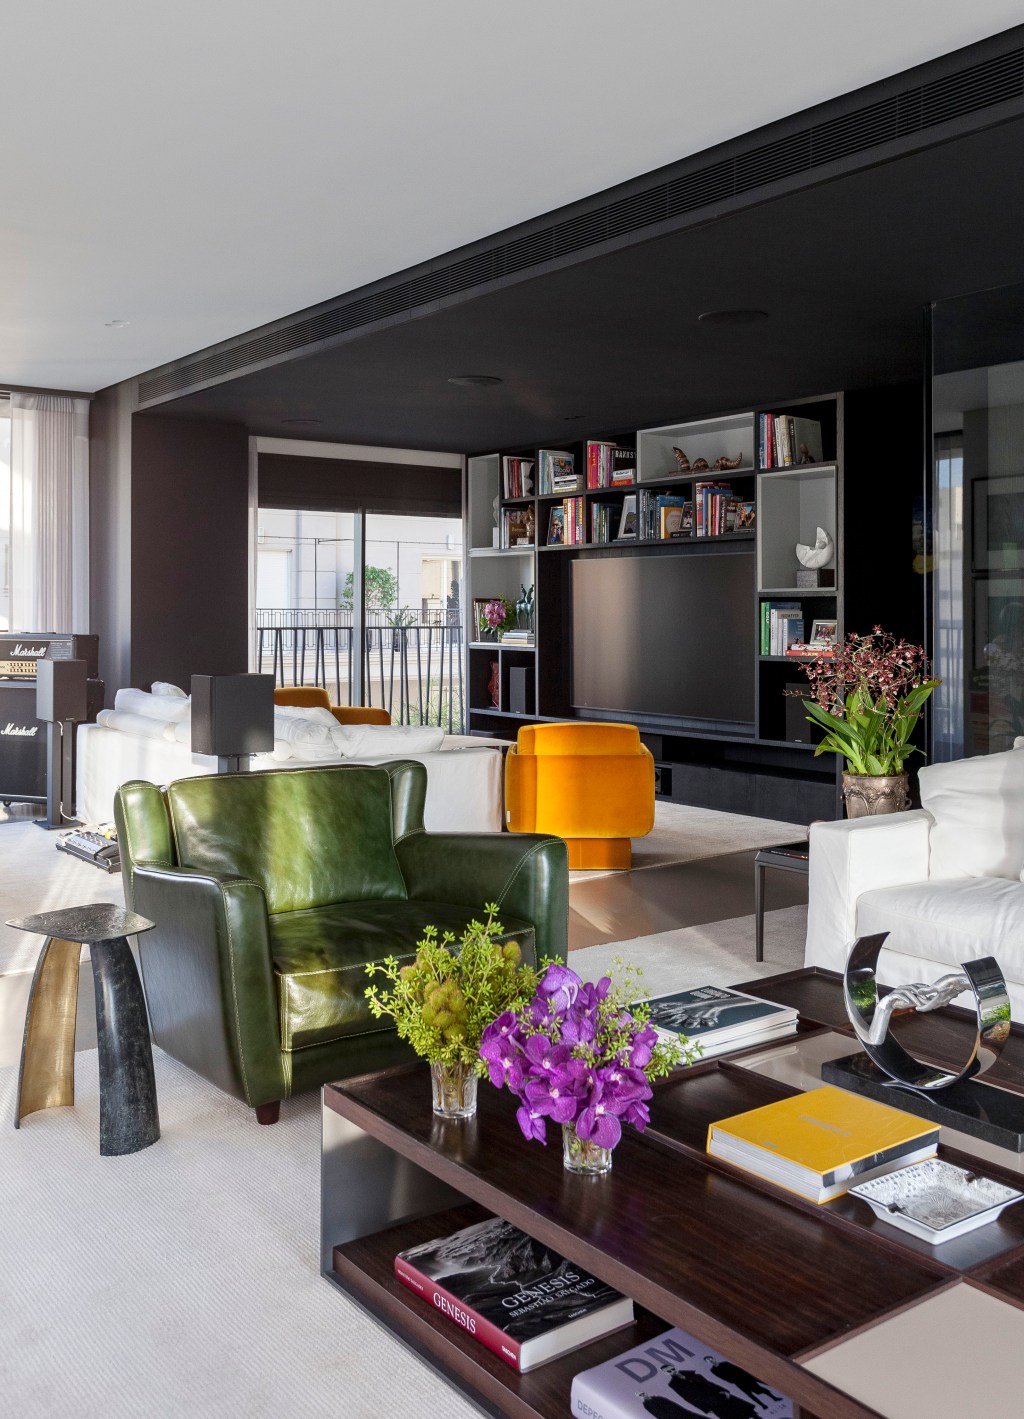 David Bastos assina apê de 268 m² com décor sóbrio e elegante. Na foto, sala de estar com estante preta e poltrona.